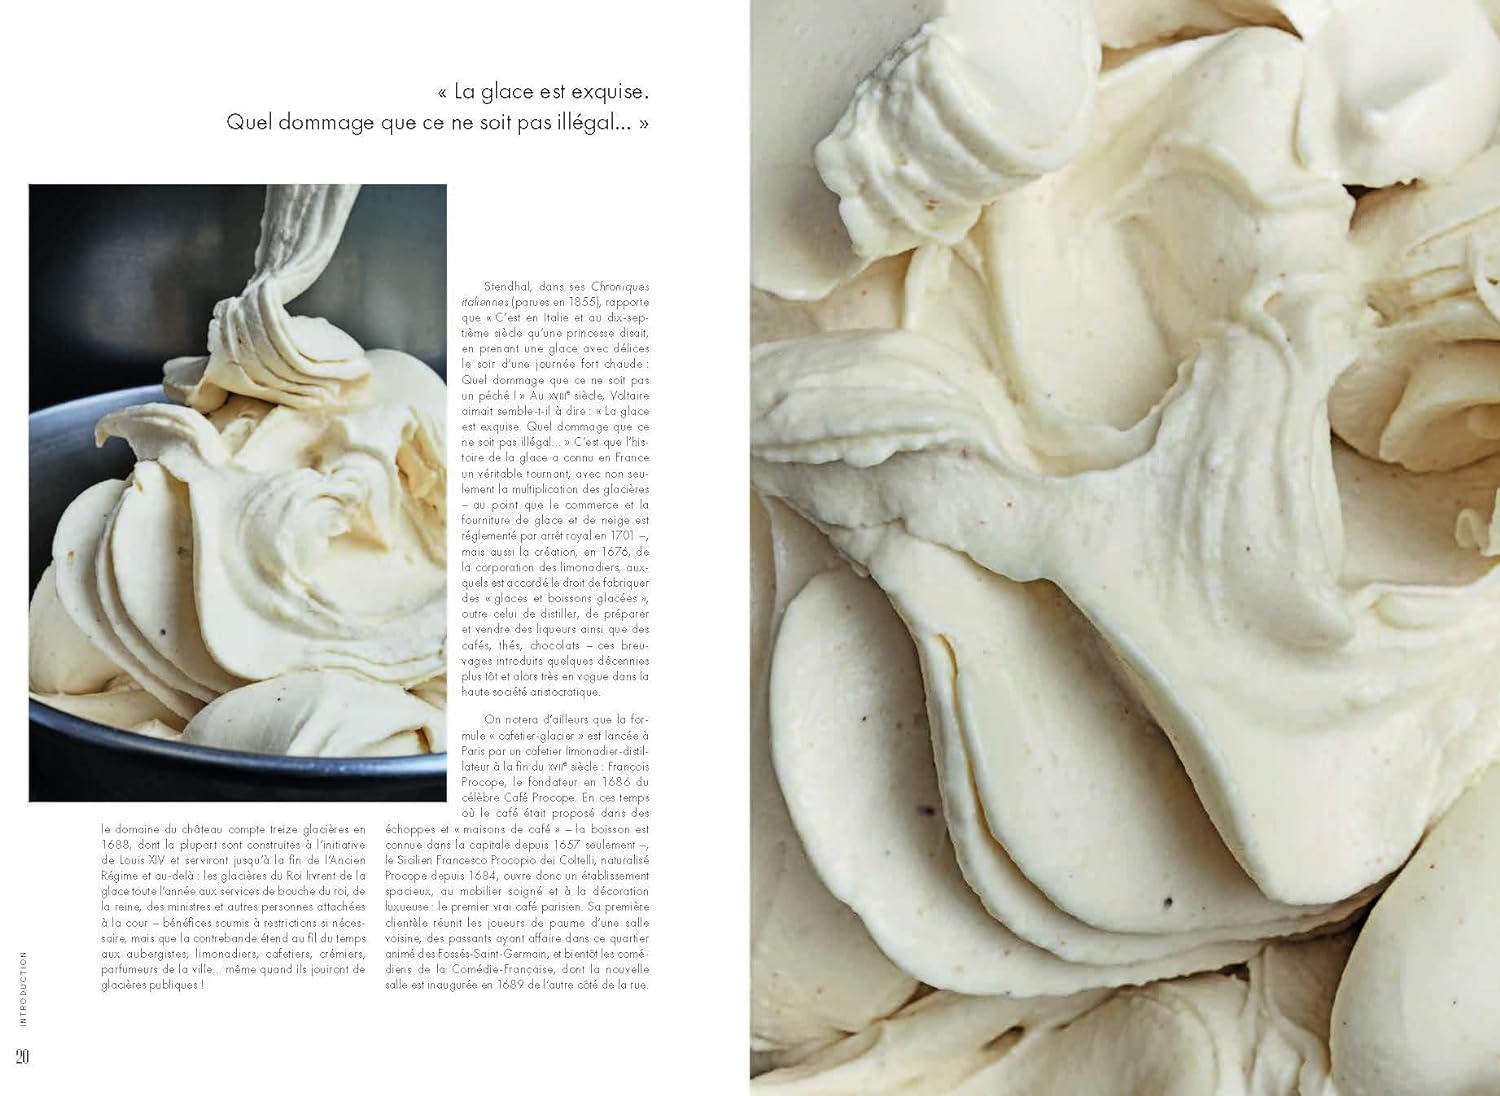 Givré: L'art de la pâtisserie glacée en 60 recettes    - De La Martinière Ed. - Livre de cuisine - 